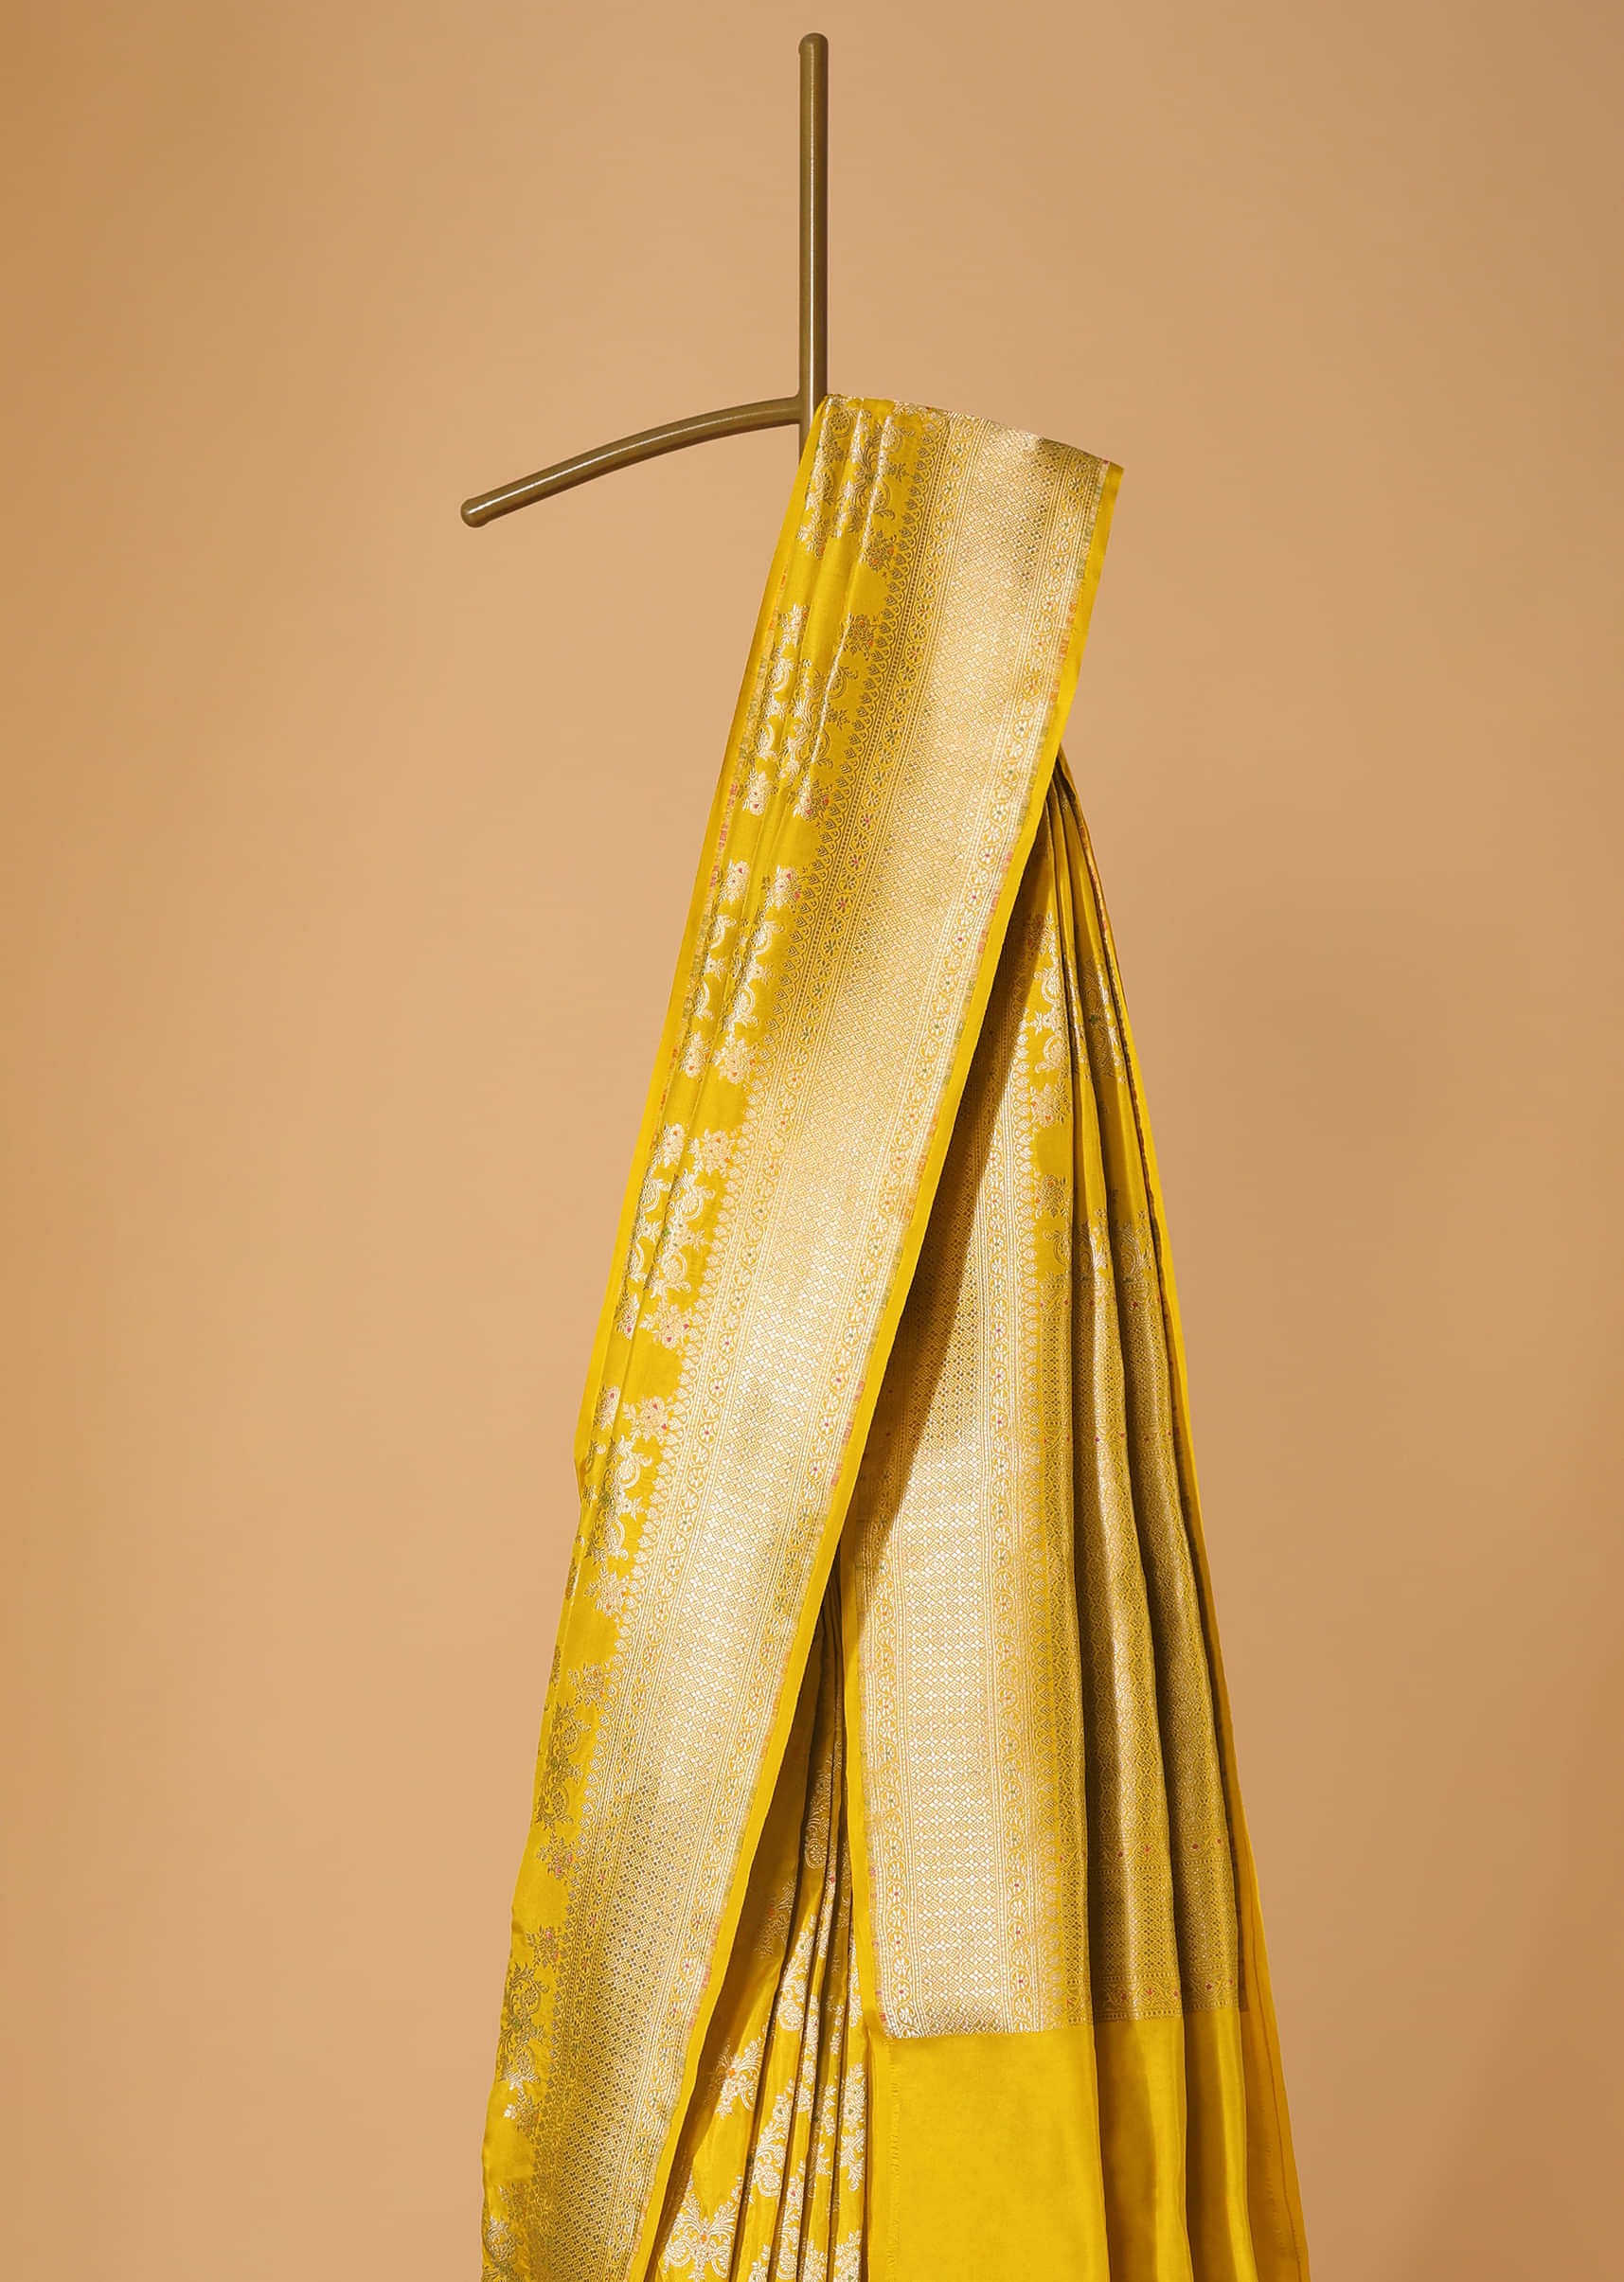 Yellow Handloom Banarasi Saree In Uppada Silk With Meenakari Weave